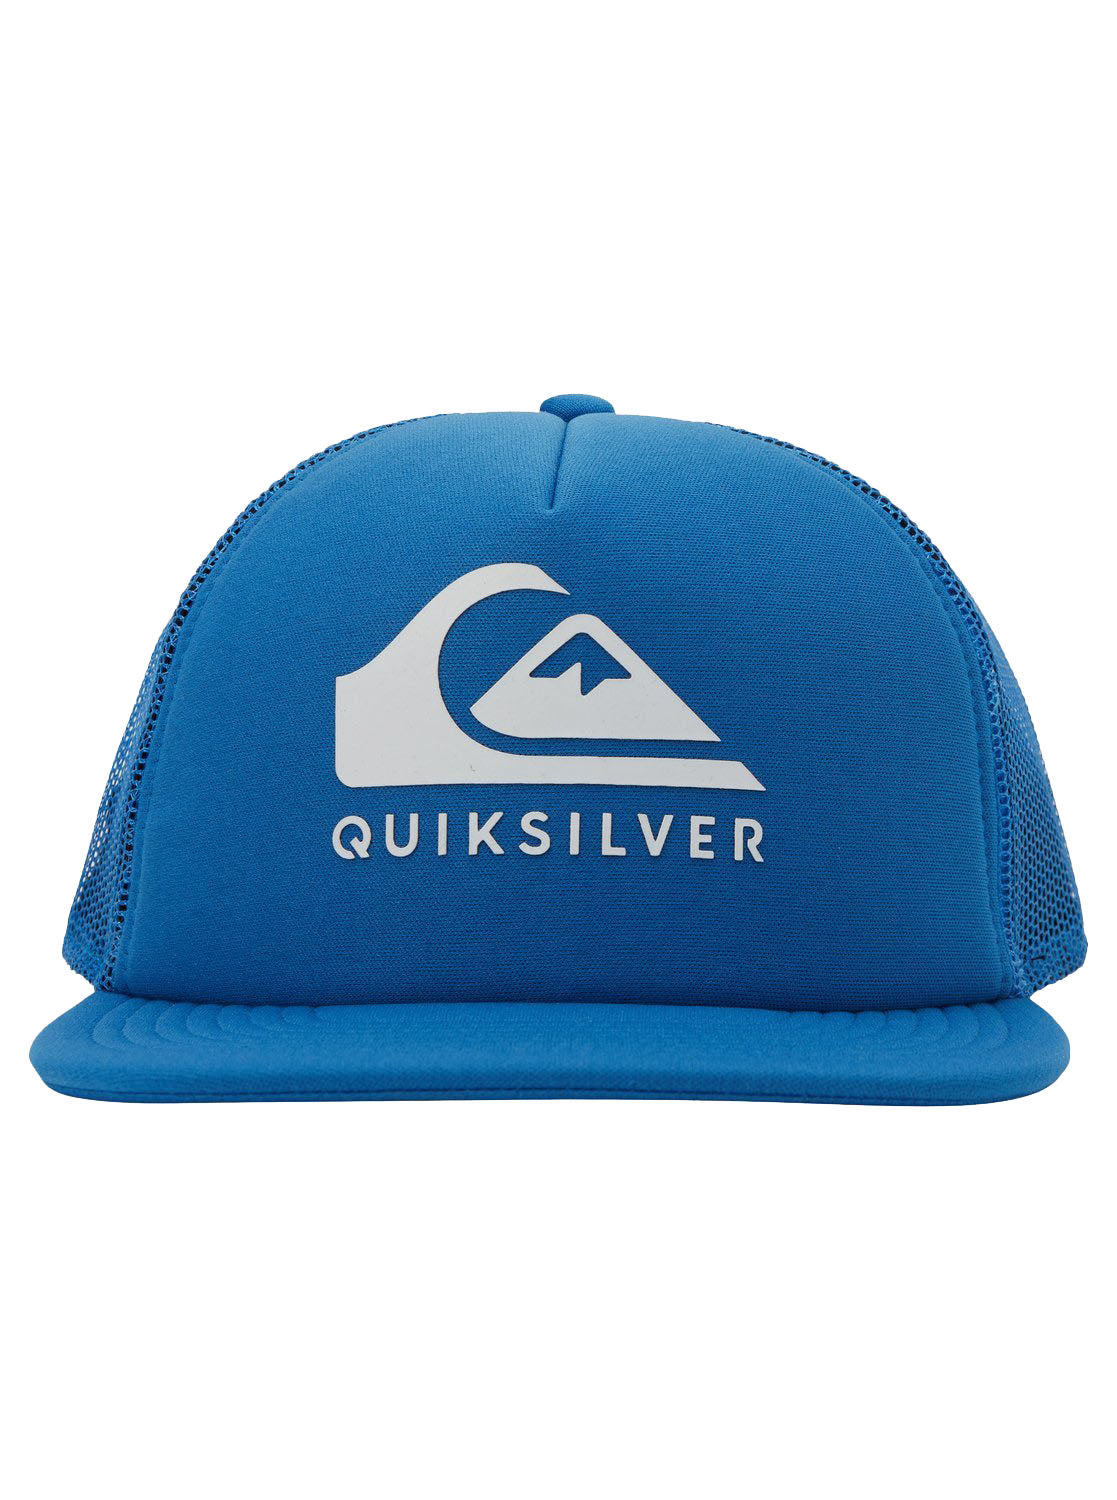 Quiksilver Boys Foamslayer Trucker Hat